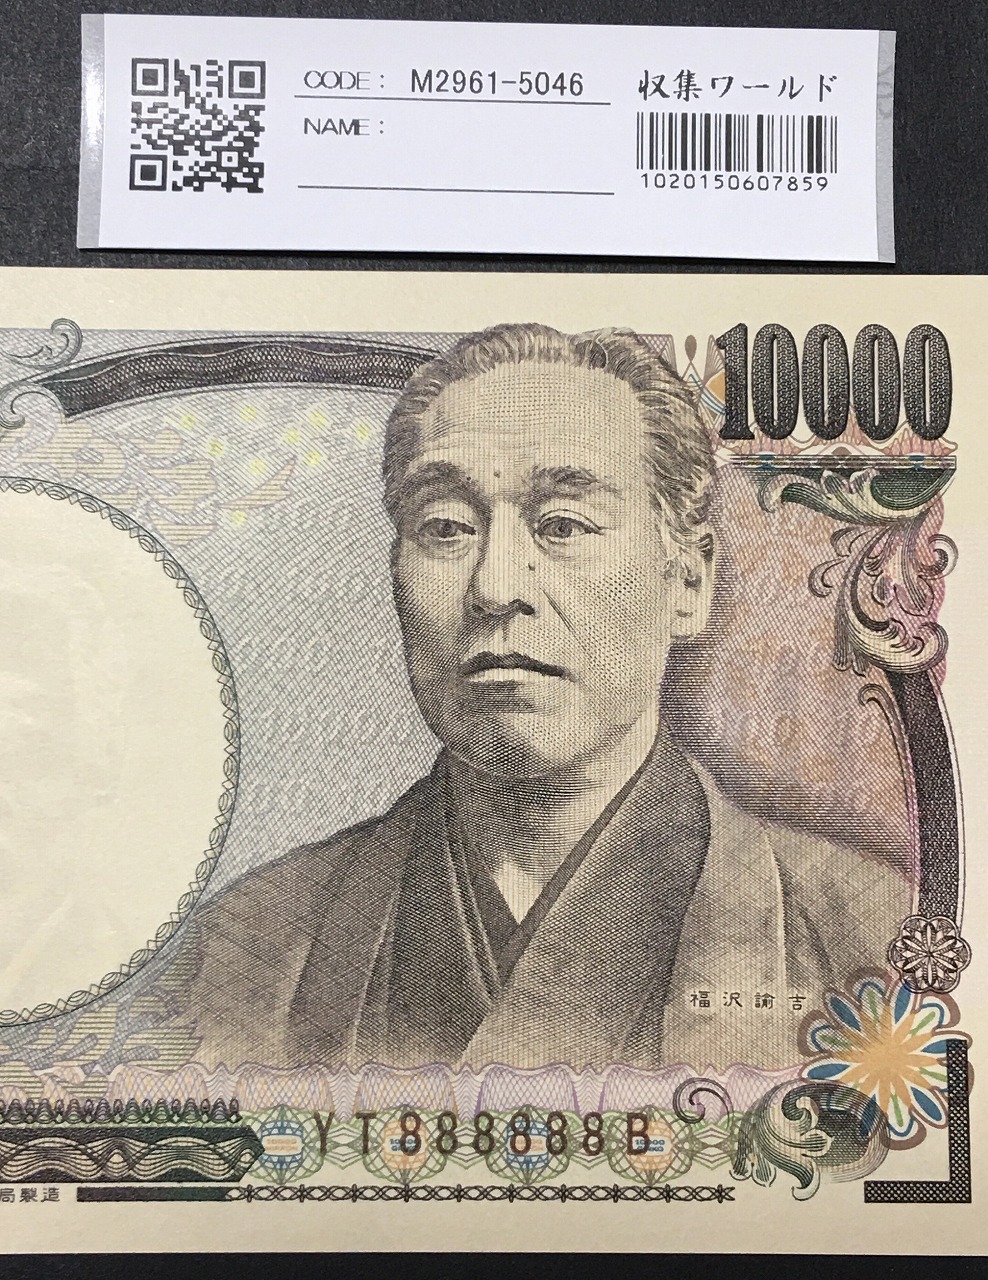 新福沢 1万円紙幣 国立印刷局 褐色 珍番 YT888888B 完未品